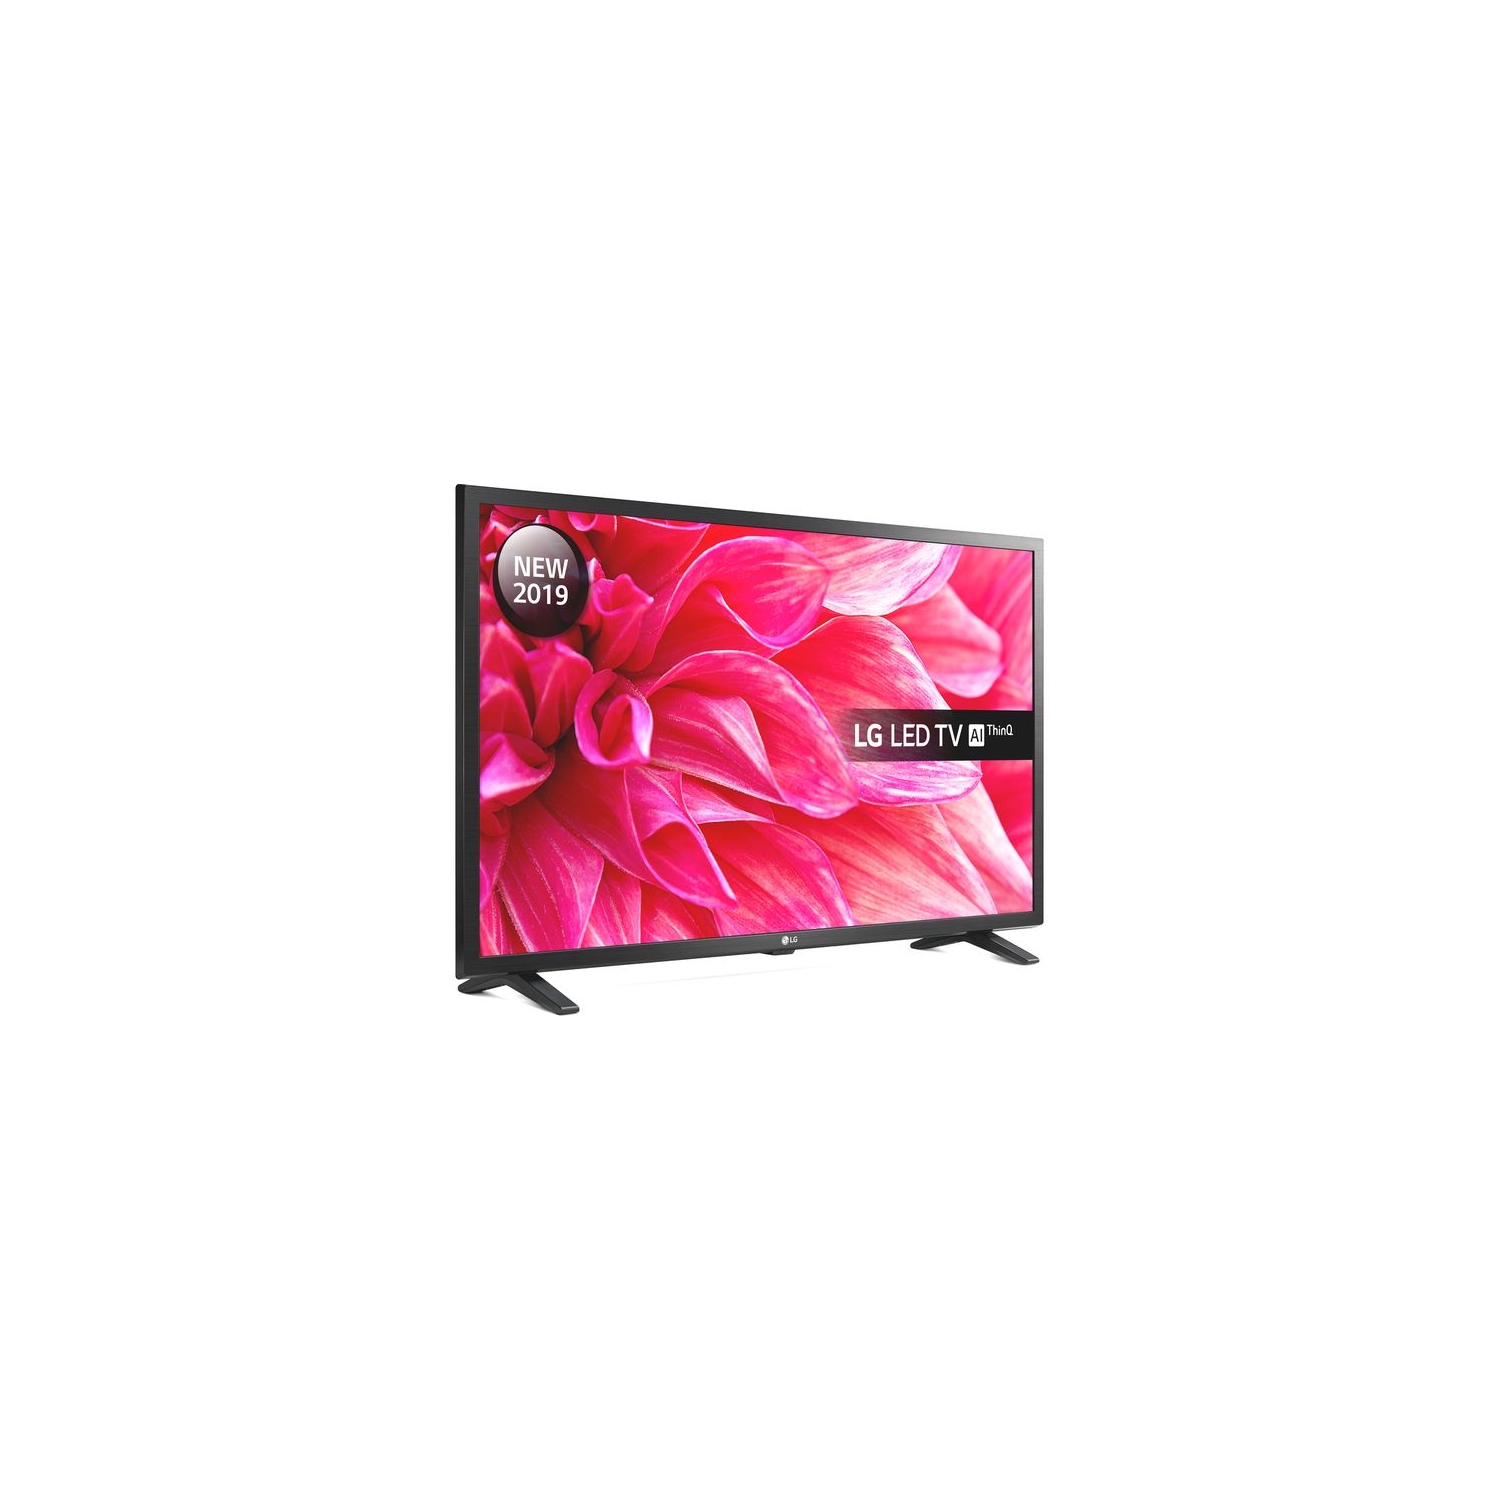 LG 32LQ63006LA - Smart TV LED HD Active HDR de 32 pulgadas